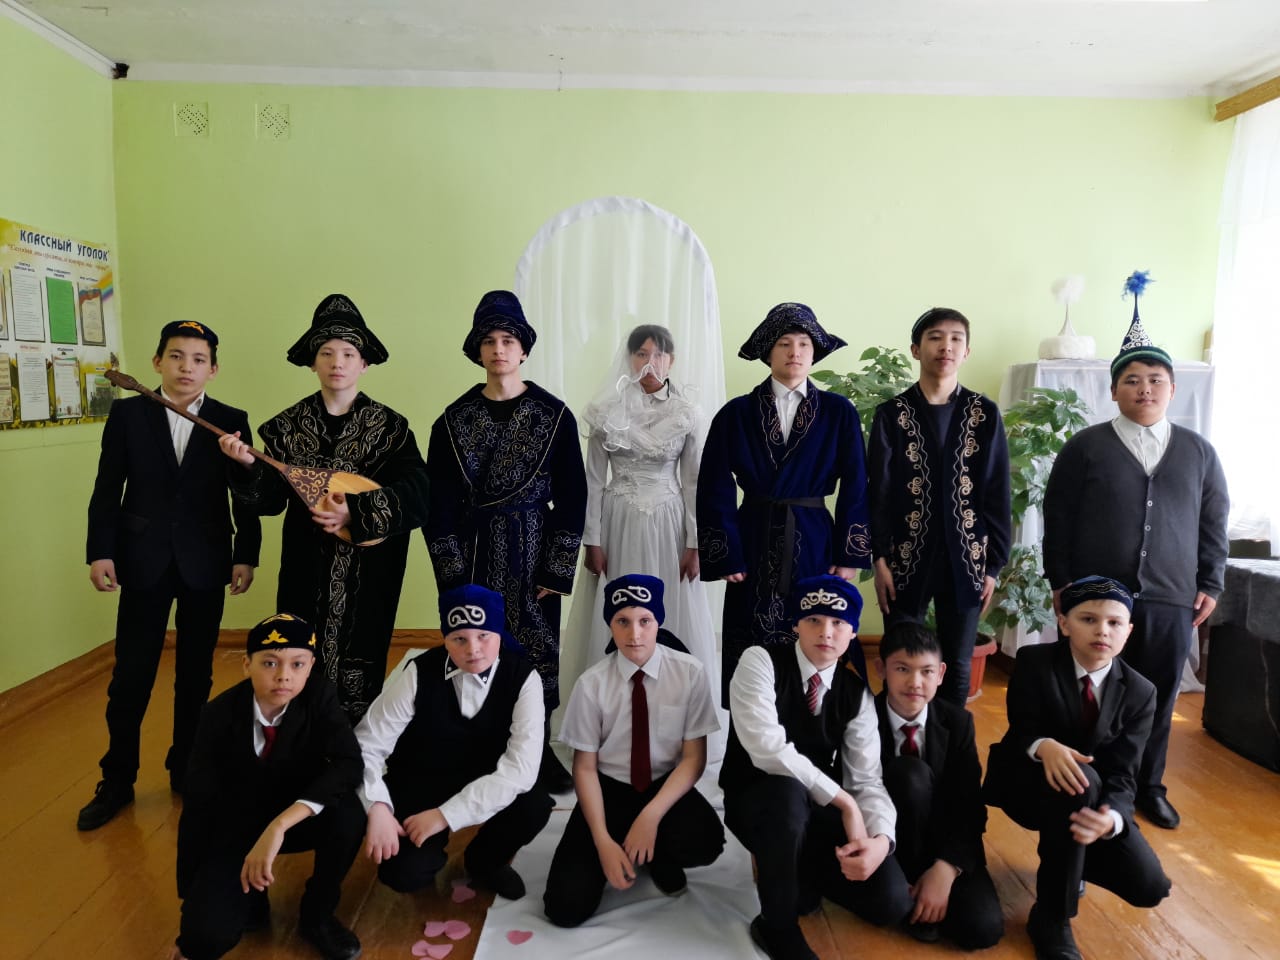 Казахский национальный обряд  Беташар - Снятие фаты.